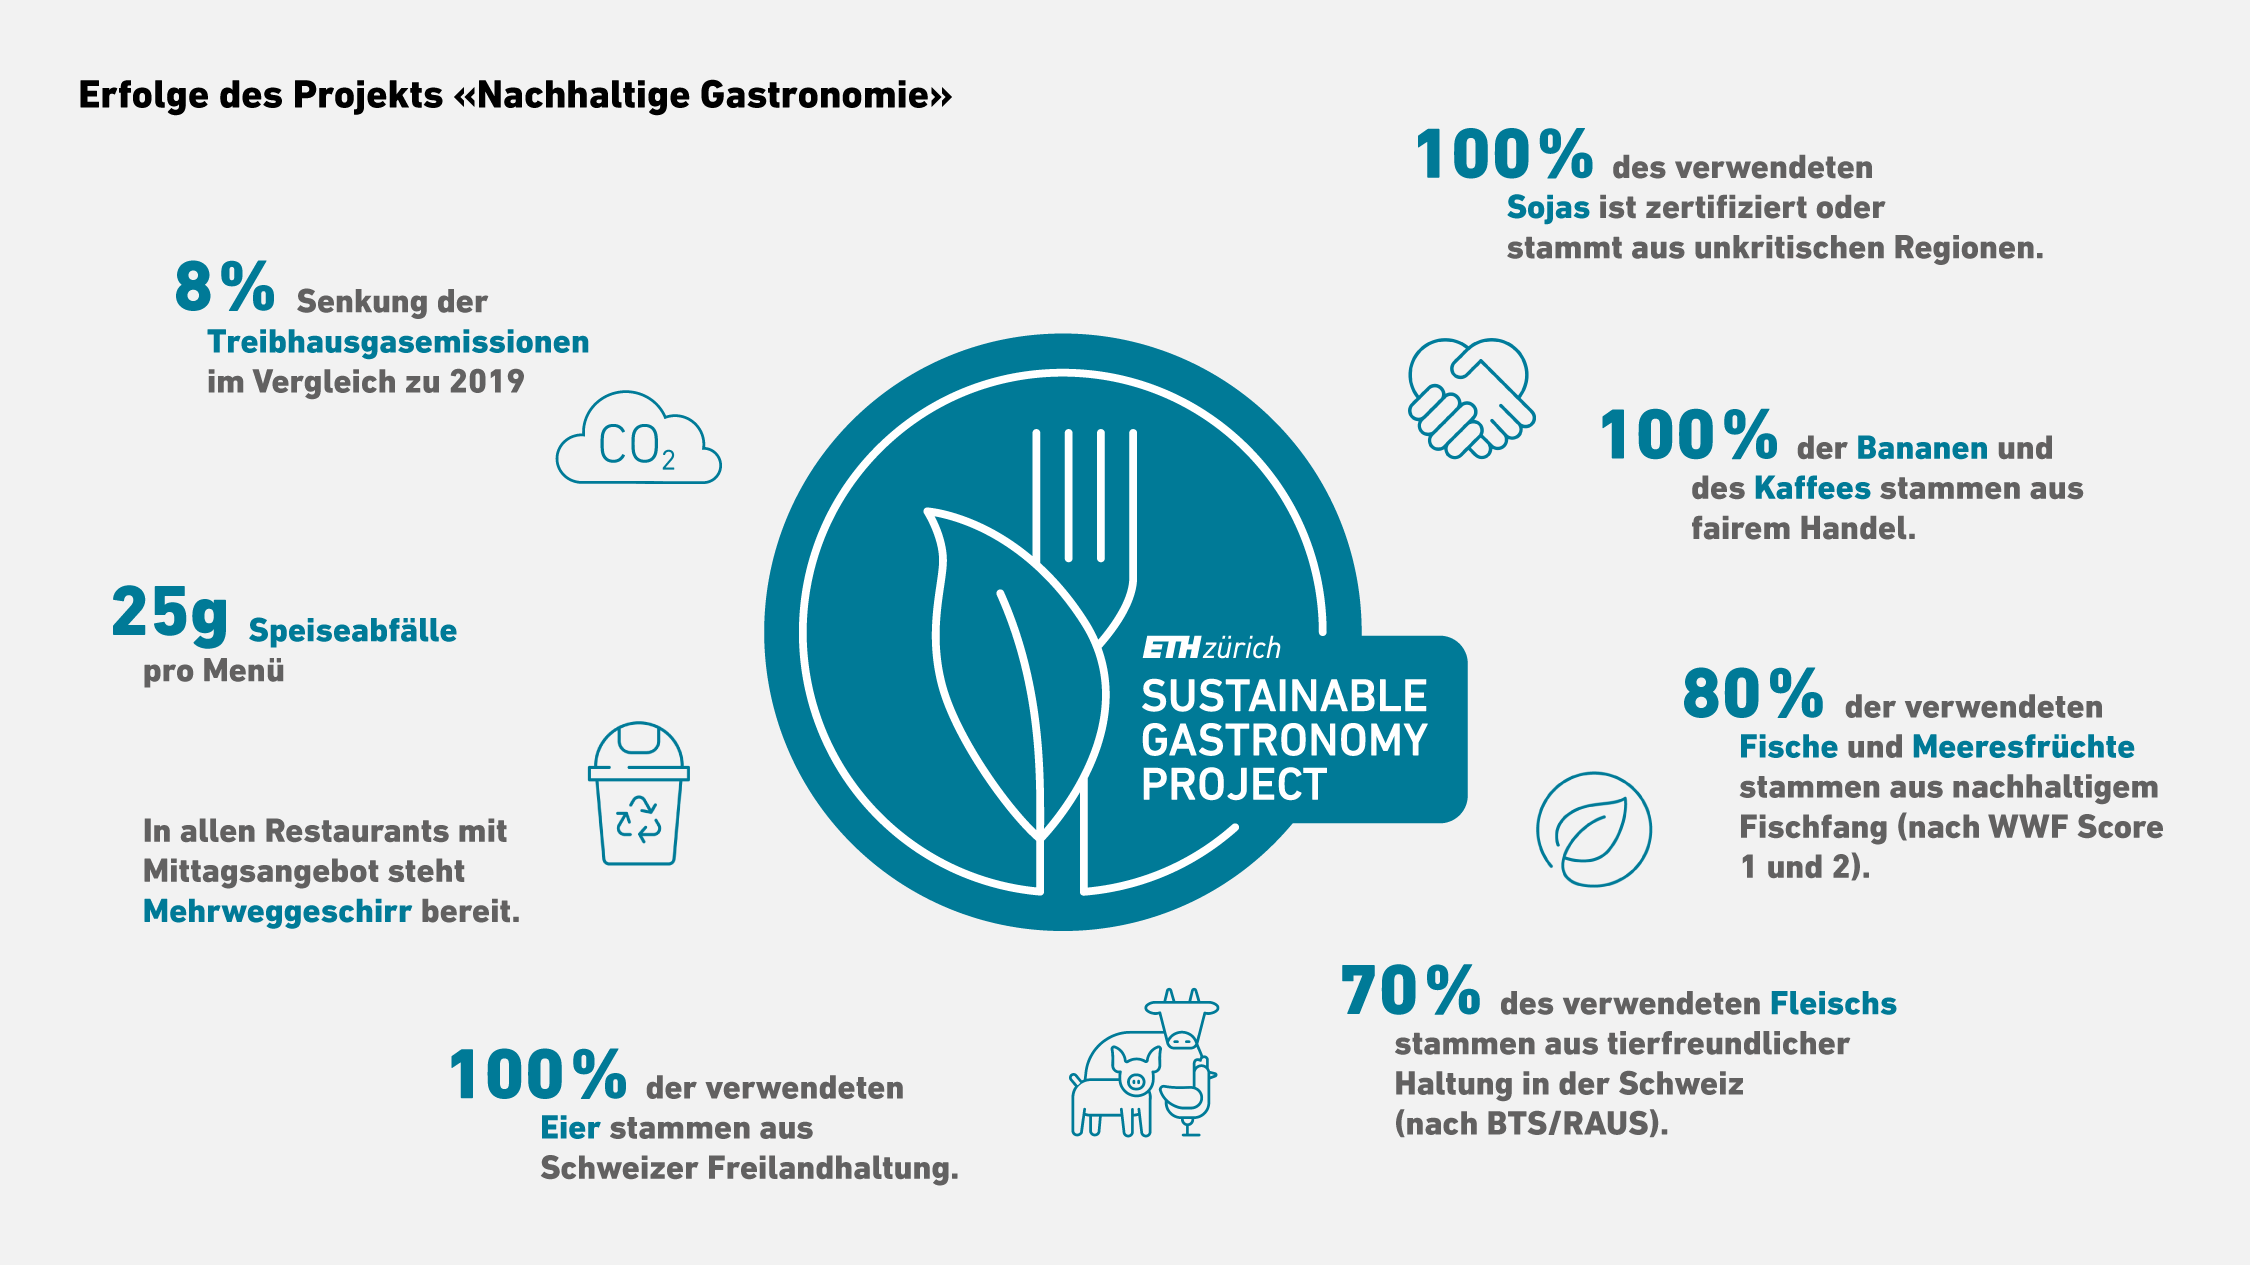 Vergrösserte Ansicht: Erfolge des Projekts "Nachhaltige Gastronomie": 8% Senkung der Treibhausgasemissionen im Vergleich zu 2019, 25g Speiseabfälle pro Menü, In allen Restaurants mit Mittagsangebot steht Mehrweggeschirr bereit, 100% der verwendeten Eier stammen aus Schweizer Freilandhaltung, 70% des verwendeten Fleischs stammen aus tierfreundlicher Haltung in der Schweiz (nach BTS/RAUS), 80% der verwendeten Fische und Meeresfrüchte stammen aus nachhaltigem Fischfang (nach WWF Score 1 und 2), 100% der Bananen und des Kaffees stammen aus fairem Handel, 100% des verwendeten Sojas ist zertifiziert oder stammt aus unkritischen Regionen.